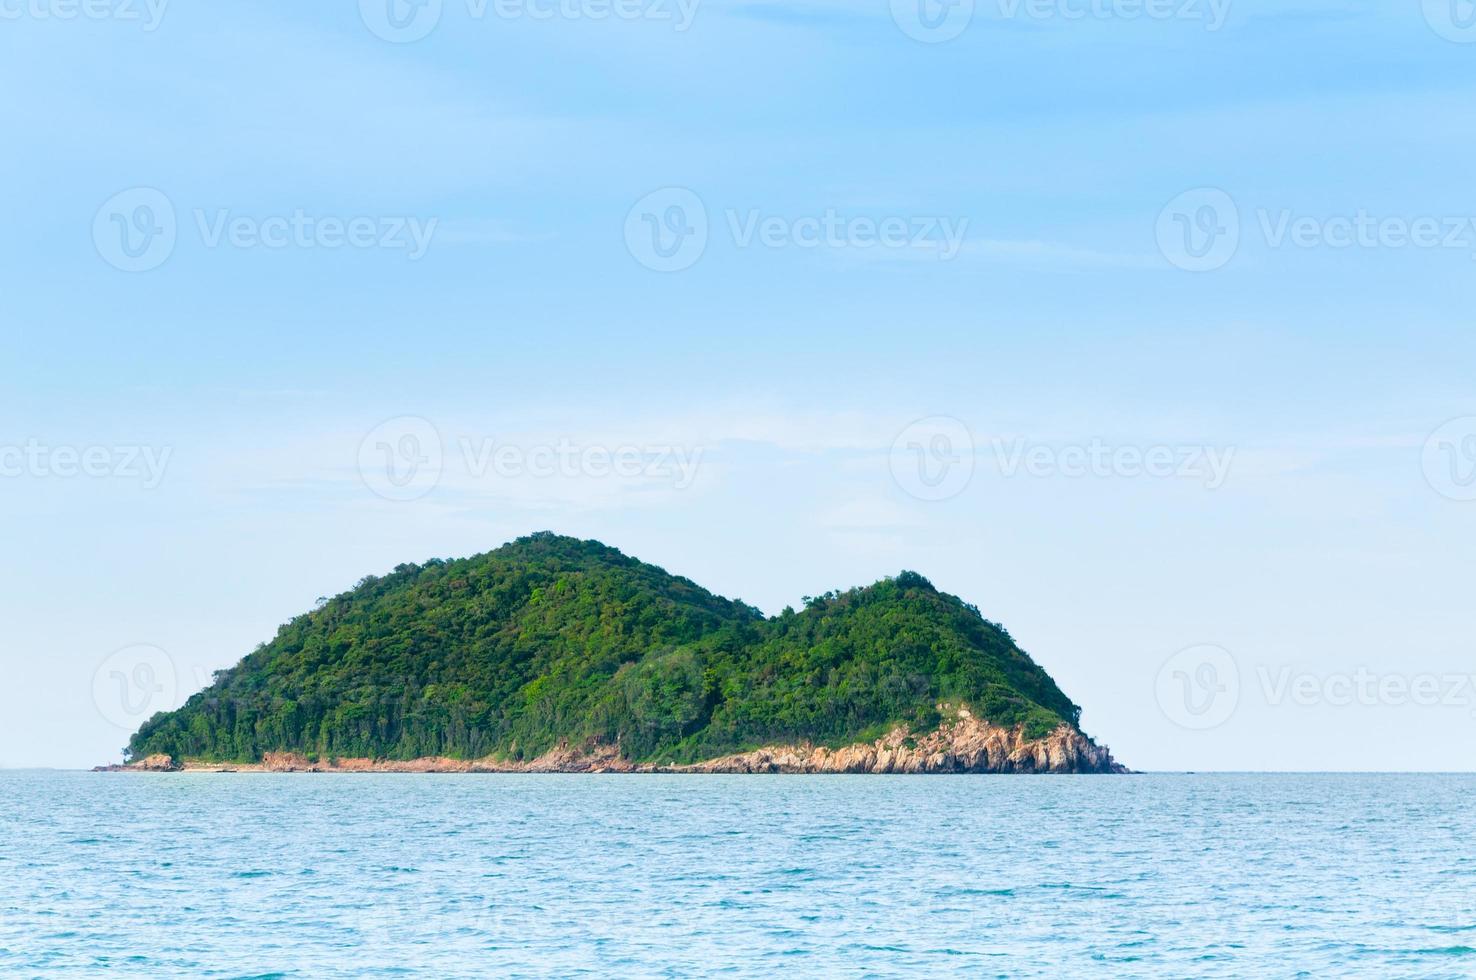 groen eiland en zee natuur landschap in songkhla thailand,natuur en niemand woestijn eiland foto